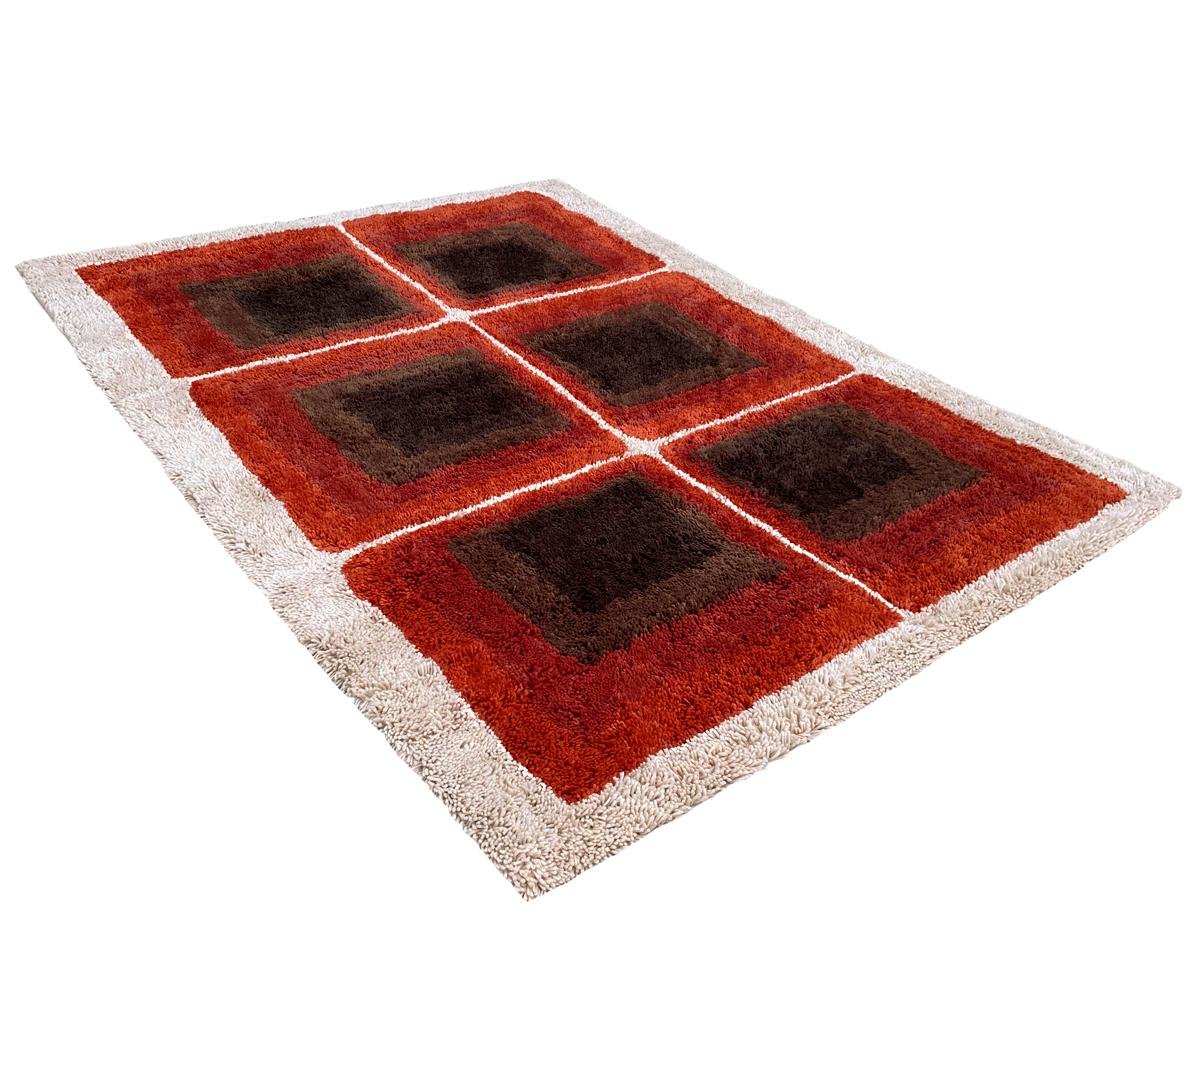 Nous sommes fiers d'offrir ces tapis shag neufs, finement fabriqués et de haute qualité. Ceux-ci s'inspirent véritablement des motifs classiques des tapis scandinaves des années 1950 et 1960. L'ensemble de l'aspect et de l'atmosphère a été conçu